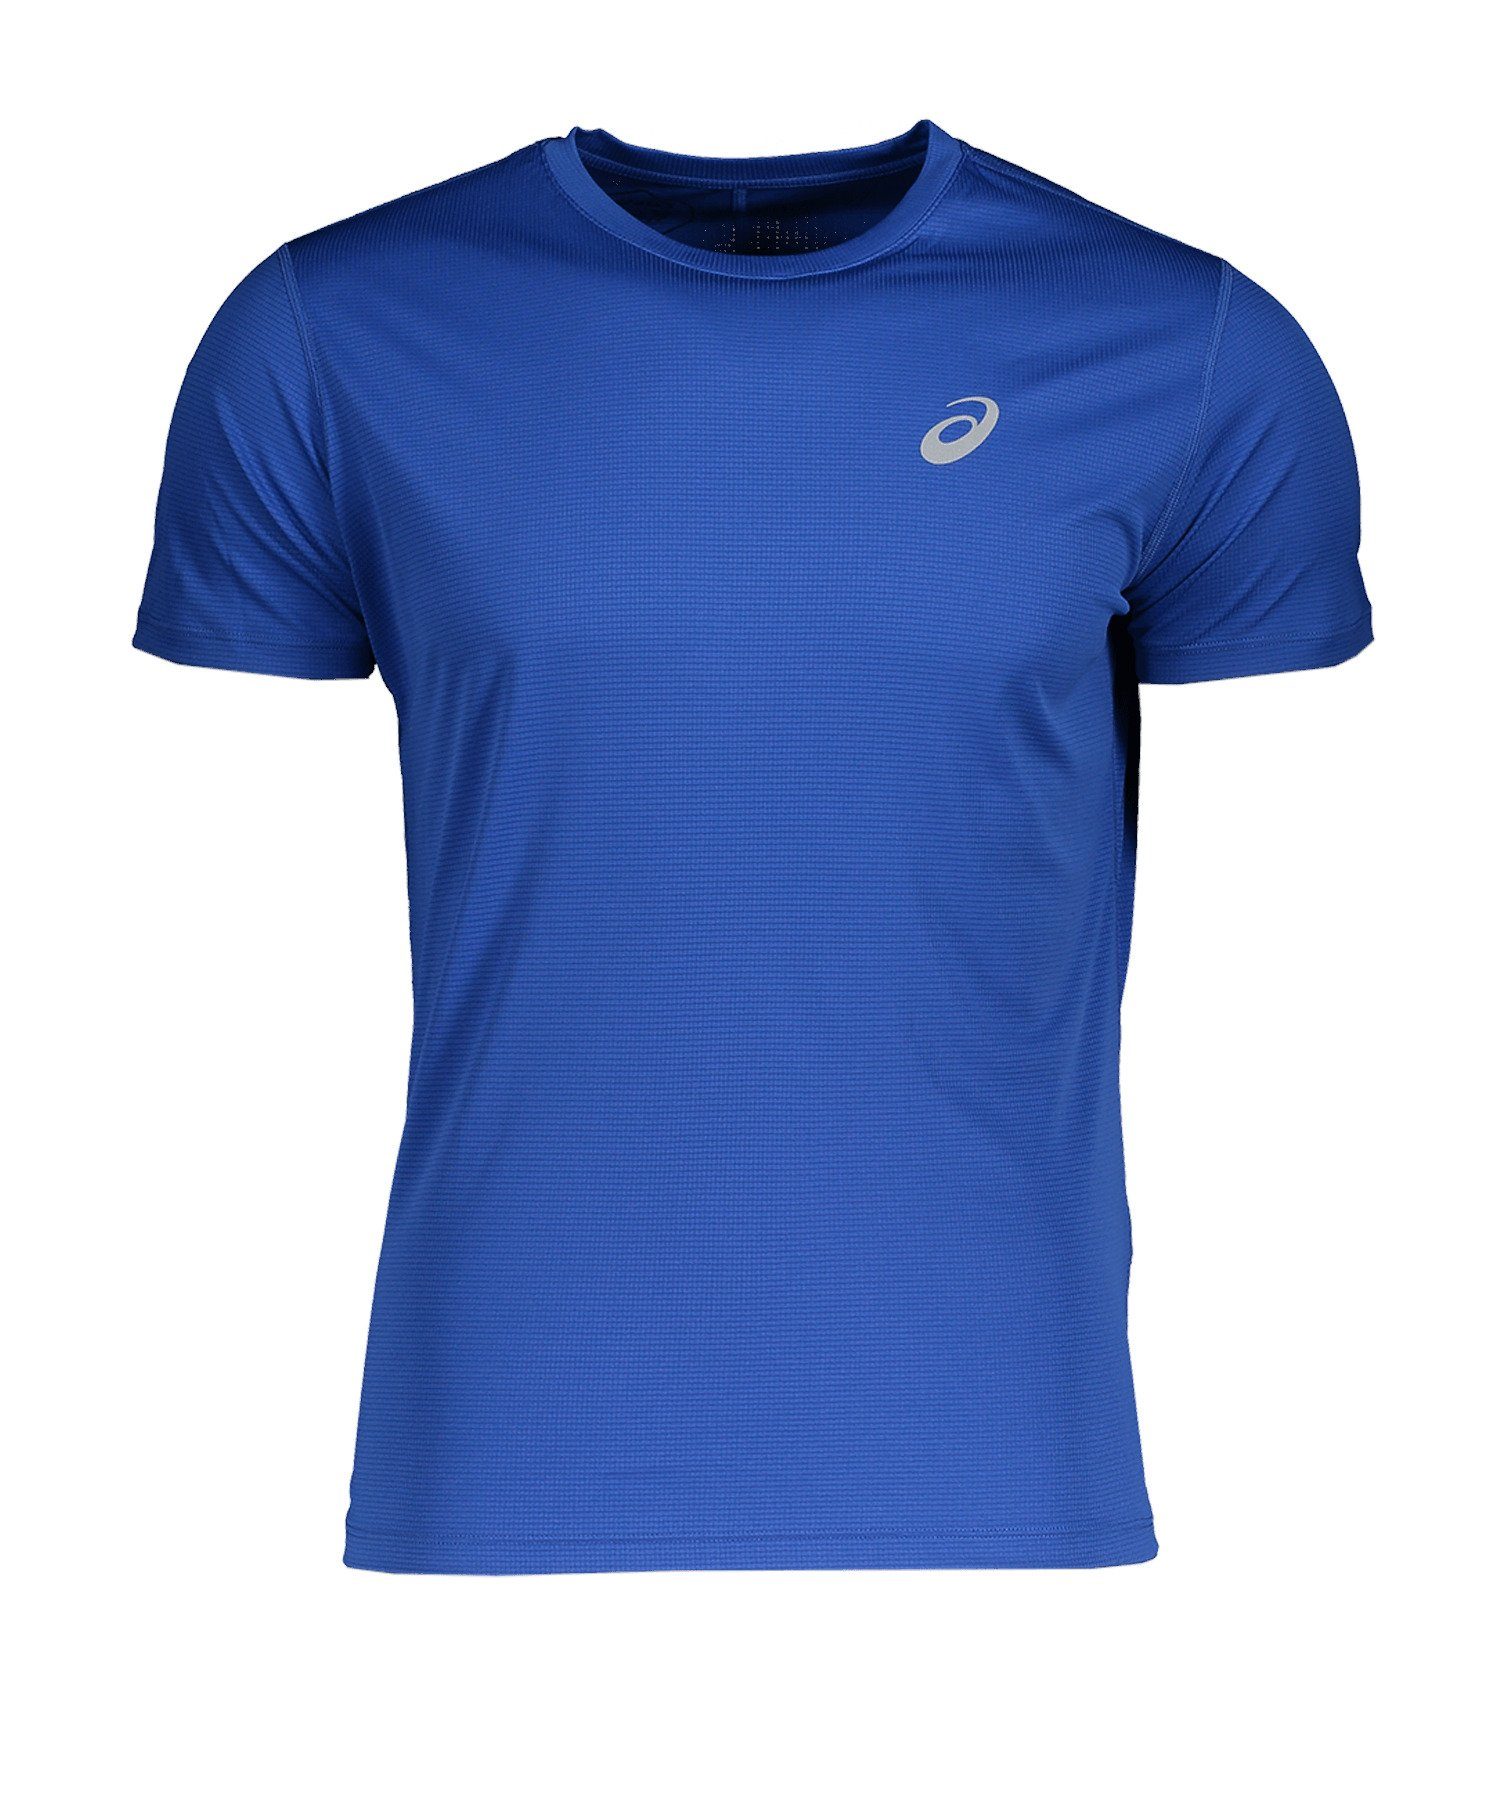 Asics Laufshirt Silver Running blau default T-Shirt